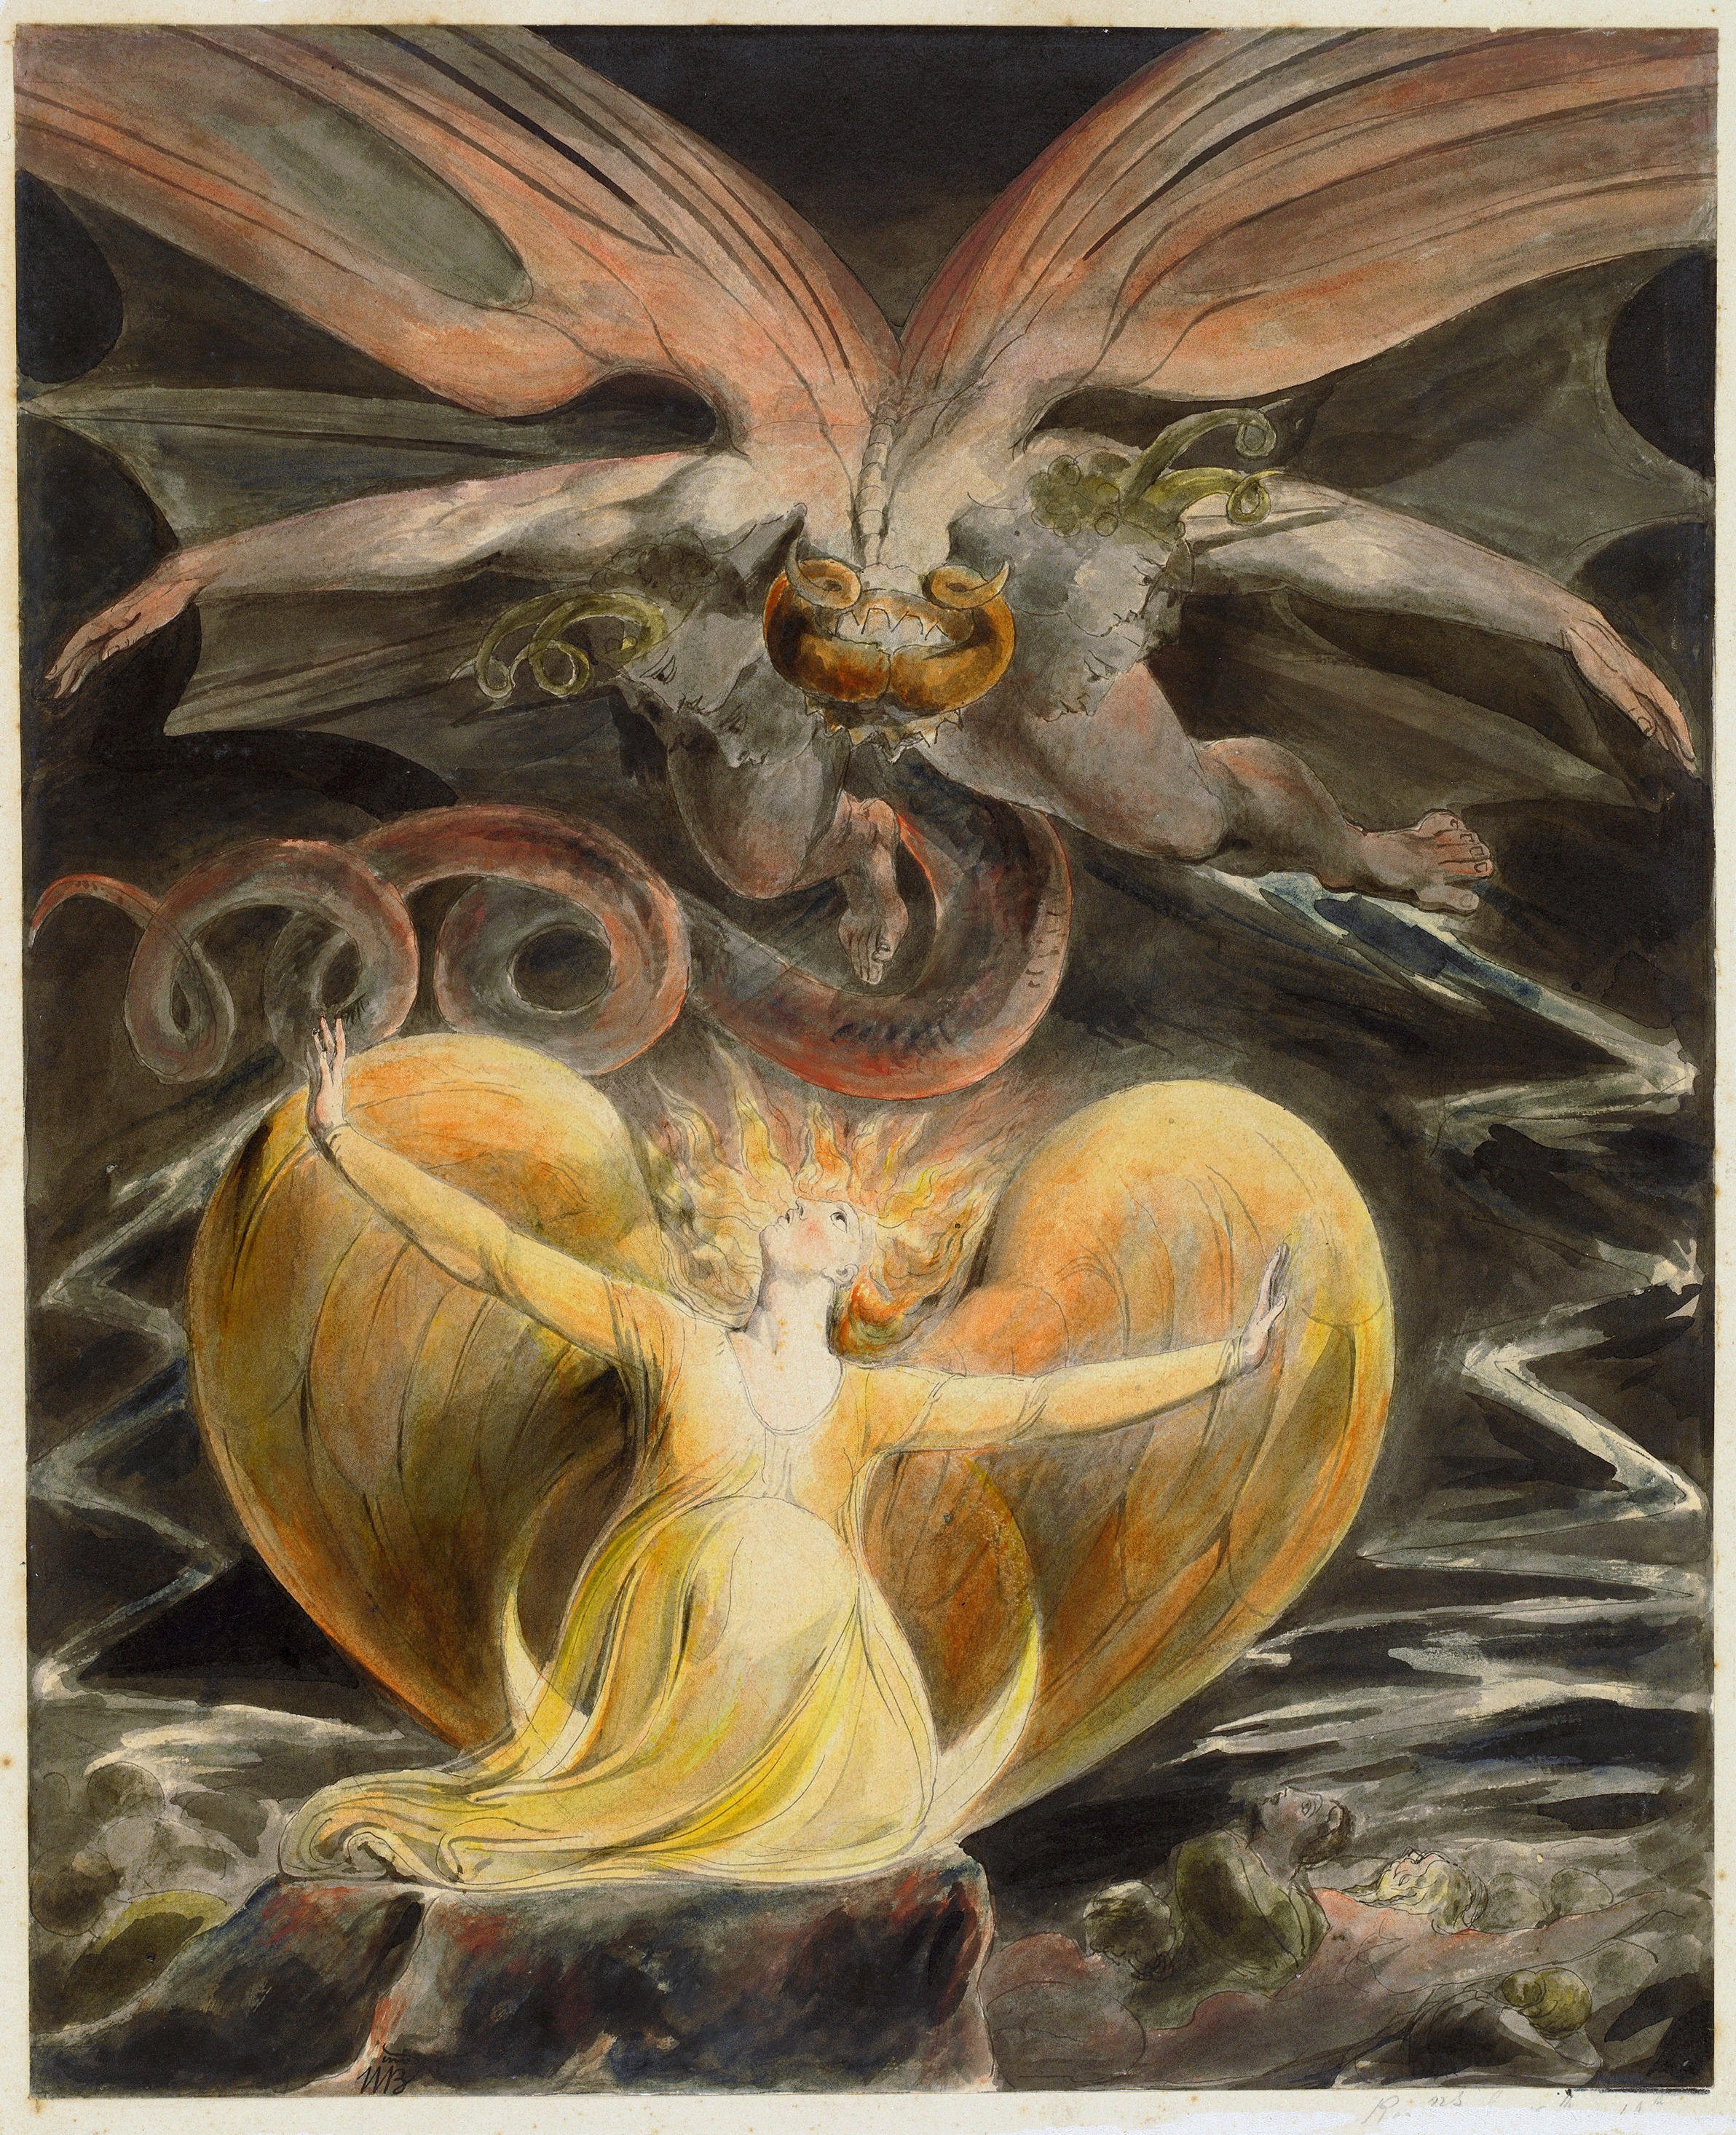 التنين الأحمر العظيم والمرأة المتشحة الشمس by William Blake - حوالي 1805 م - 43.7 في 34.8 سم 